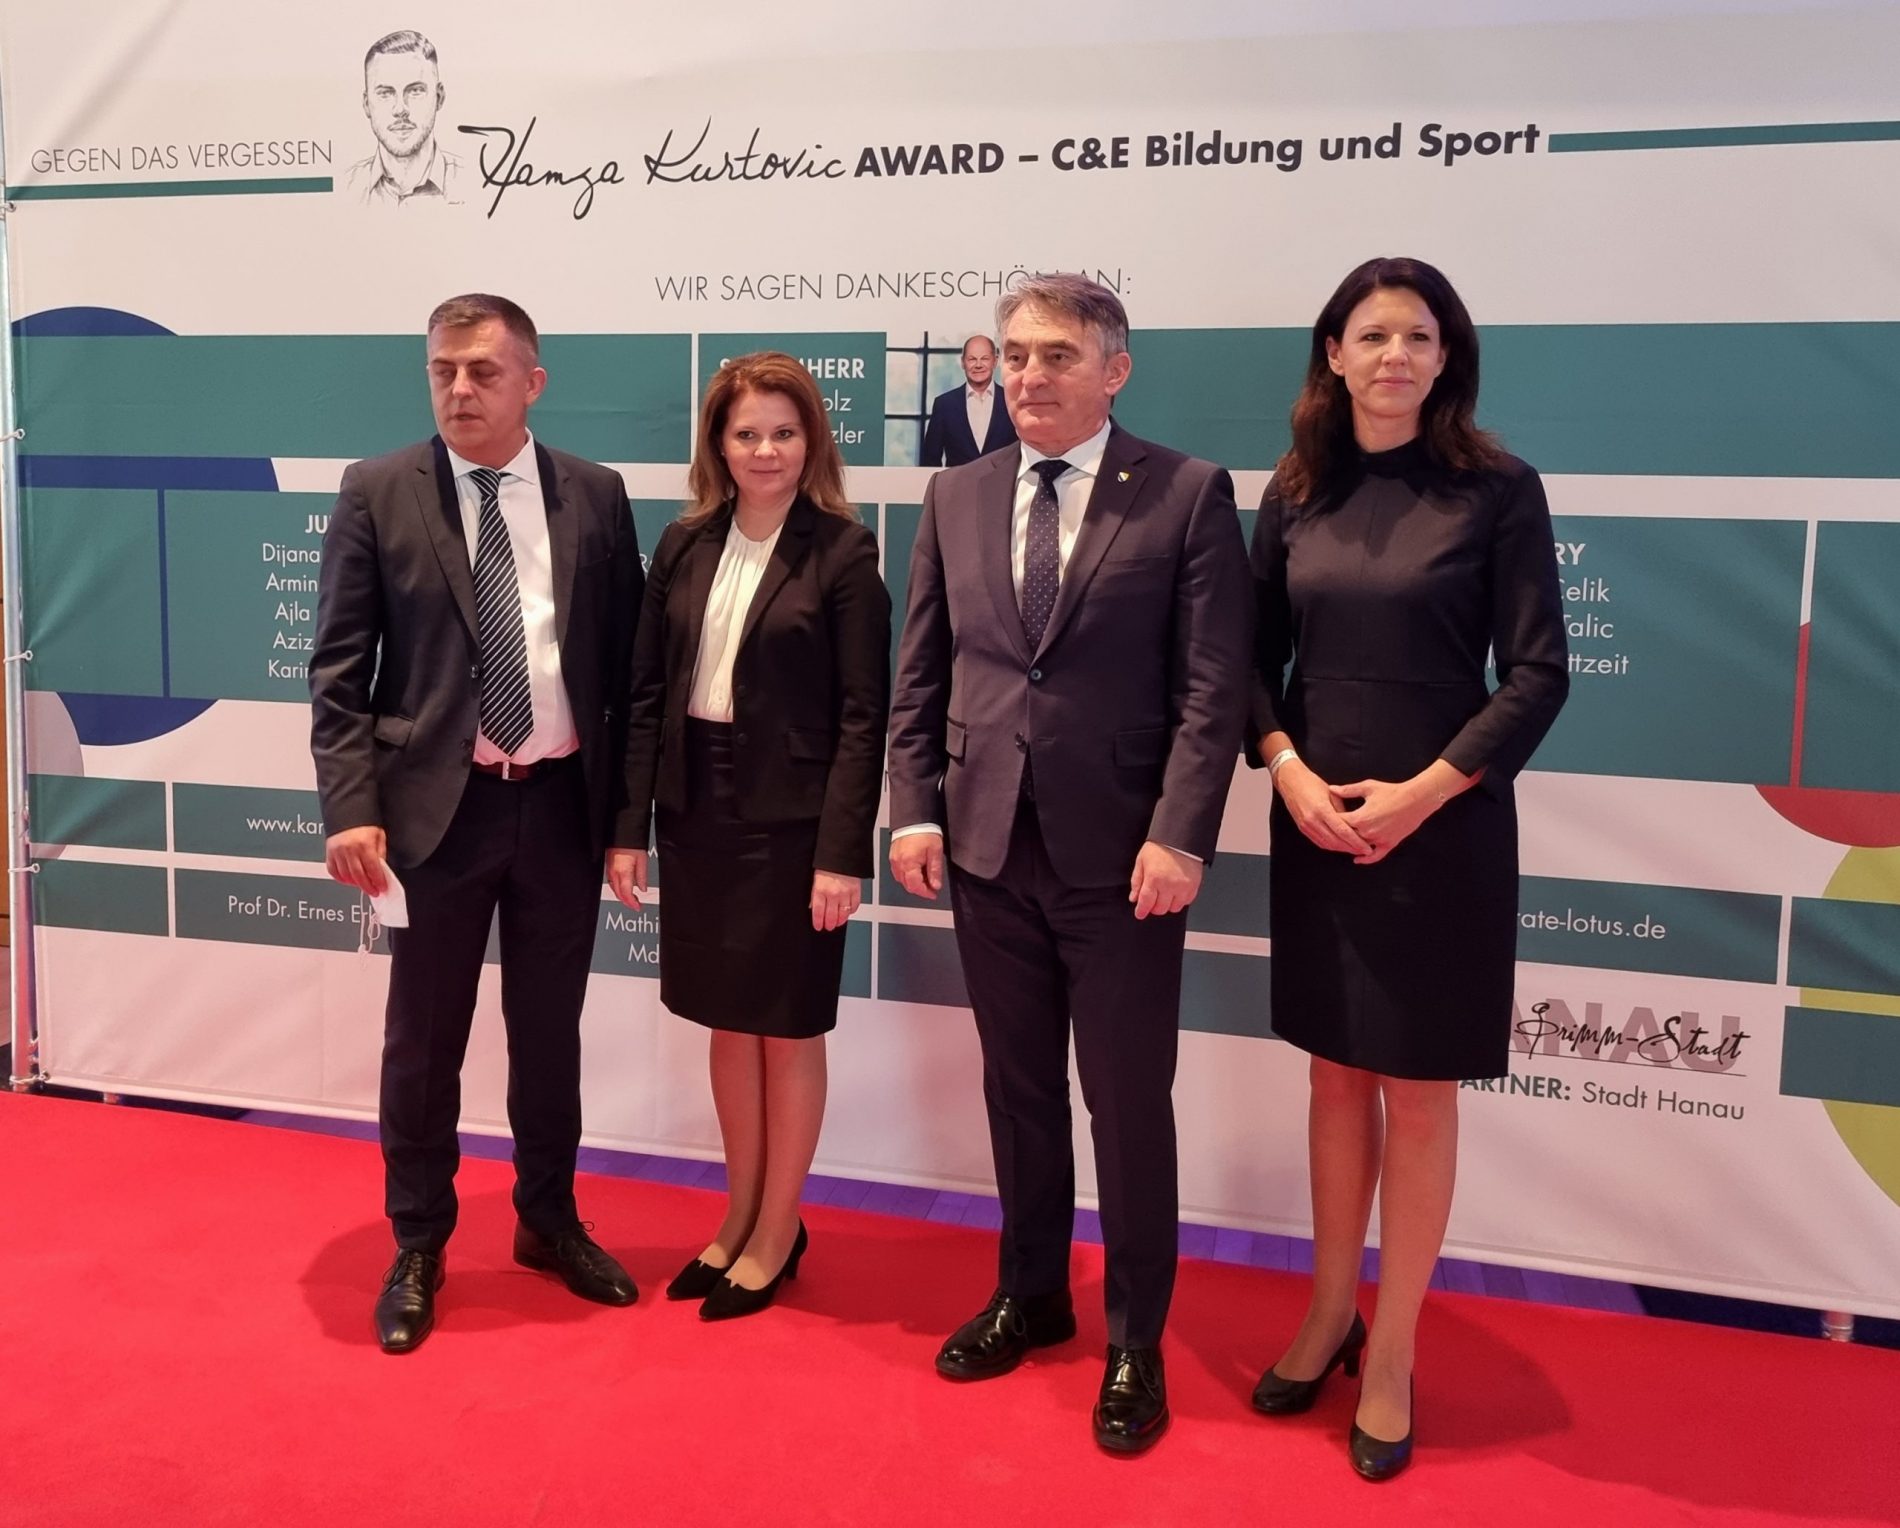 Komšić prisustvovao dodjeli nagrade „Hamza Kurtović Award – C&E obrazovanje i sport“ u Hanauu